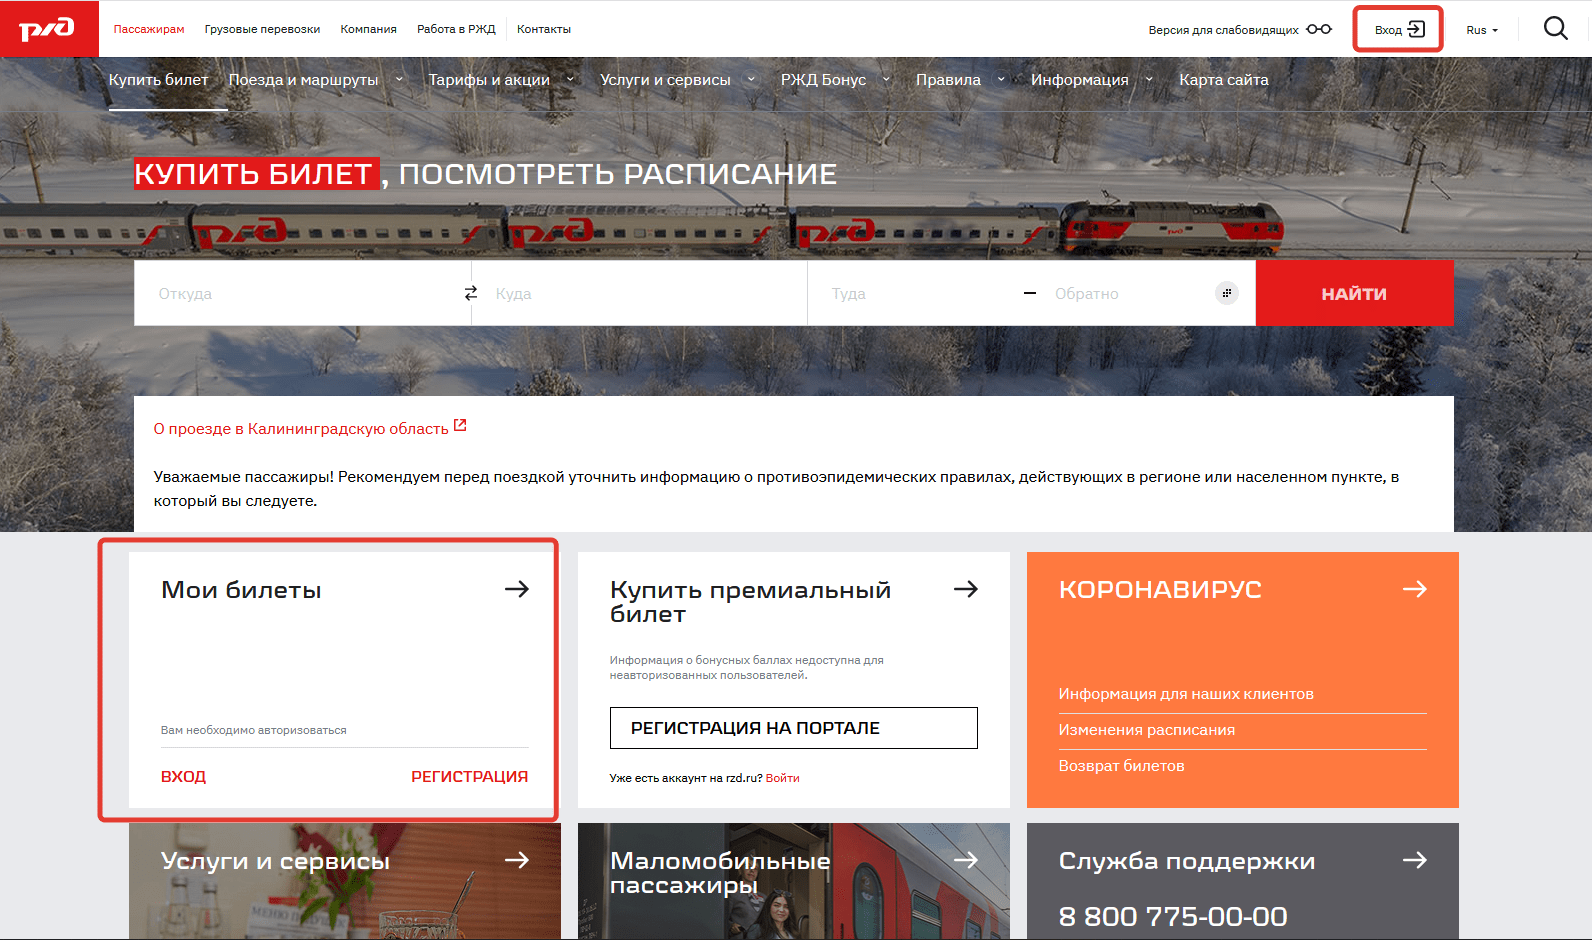 Портал помощи работникам ржд с порталом my.rzd.ru | портал помощи работникам ржд с порталом my.rzd.ru